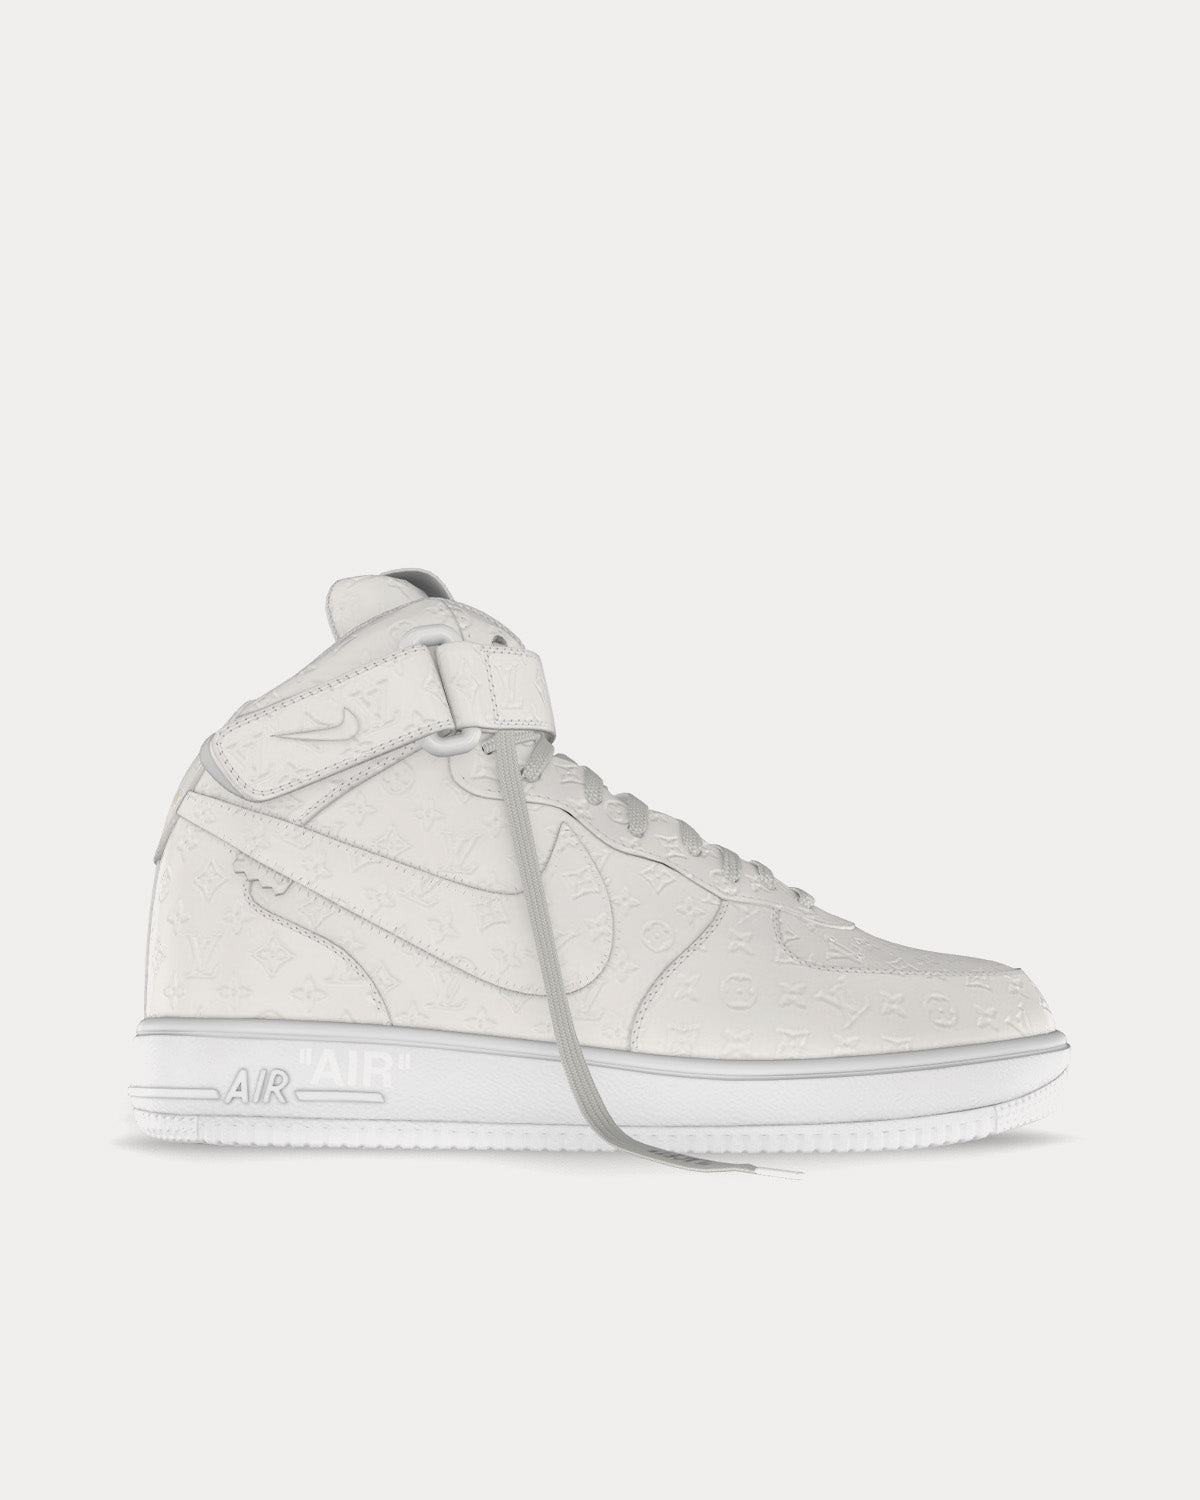 HypeNeverDies on X: Louis Vuitton x Nike Hi Top Sneakers First Look 👀   / X